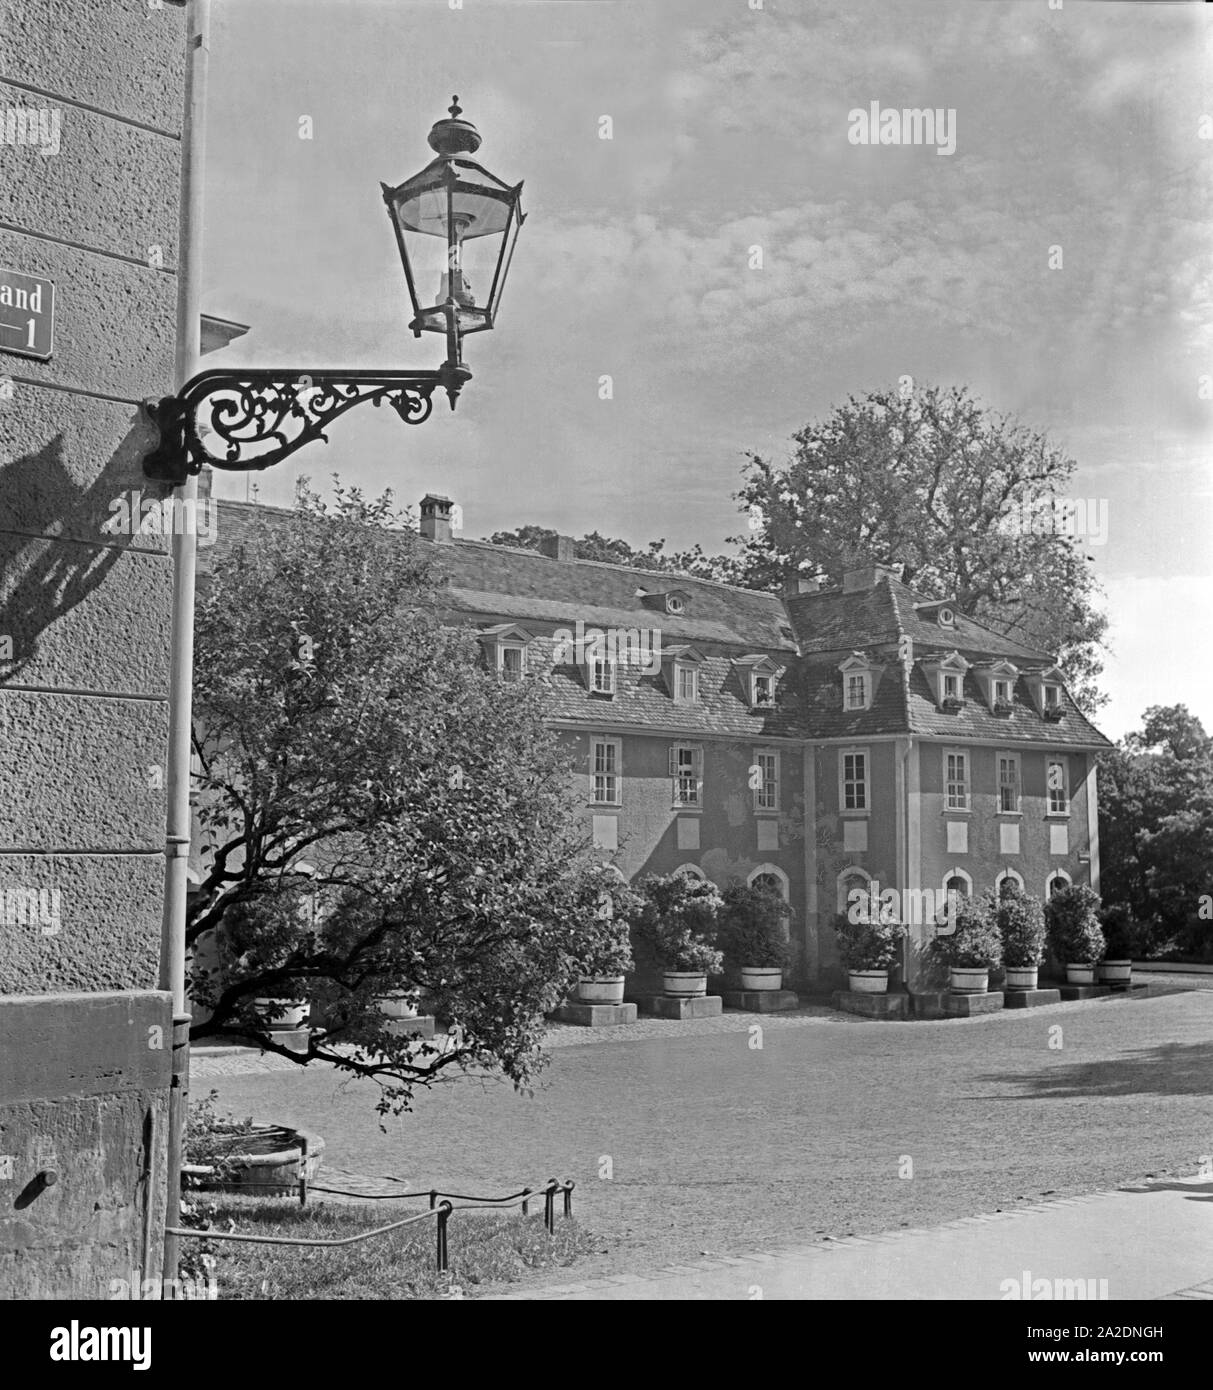 Das Haus der Ehefrau des Freiherrn vom Stein a Weimar, Deutschland 1930er. Villa della moglie del conte vom Stein a Weimar, Germania 1930s. Foto Stock